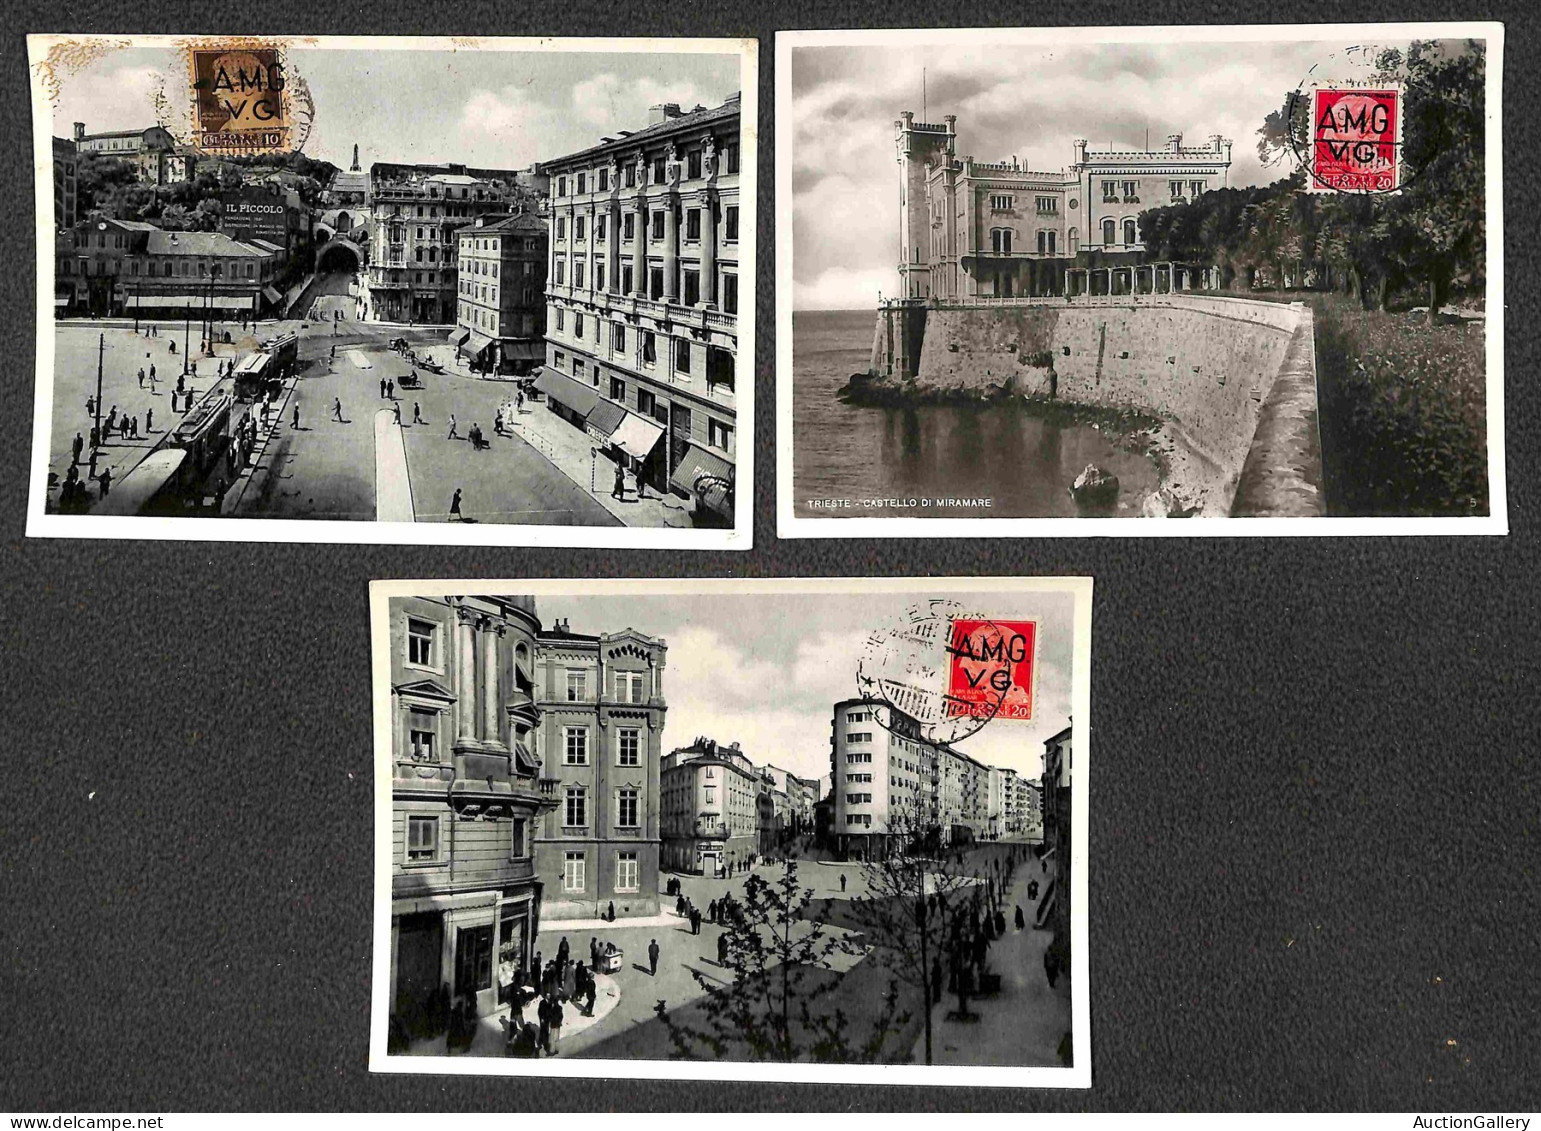 Lotti&Collezioni - Area Italiana - TRIESTE AMGVG - 1947 - Sedici cartoline diverse con i valori dell'emissione sul lato 